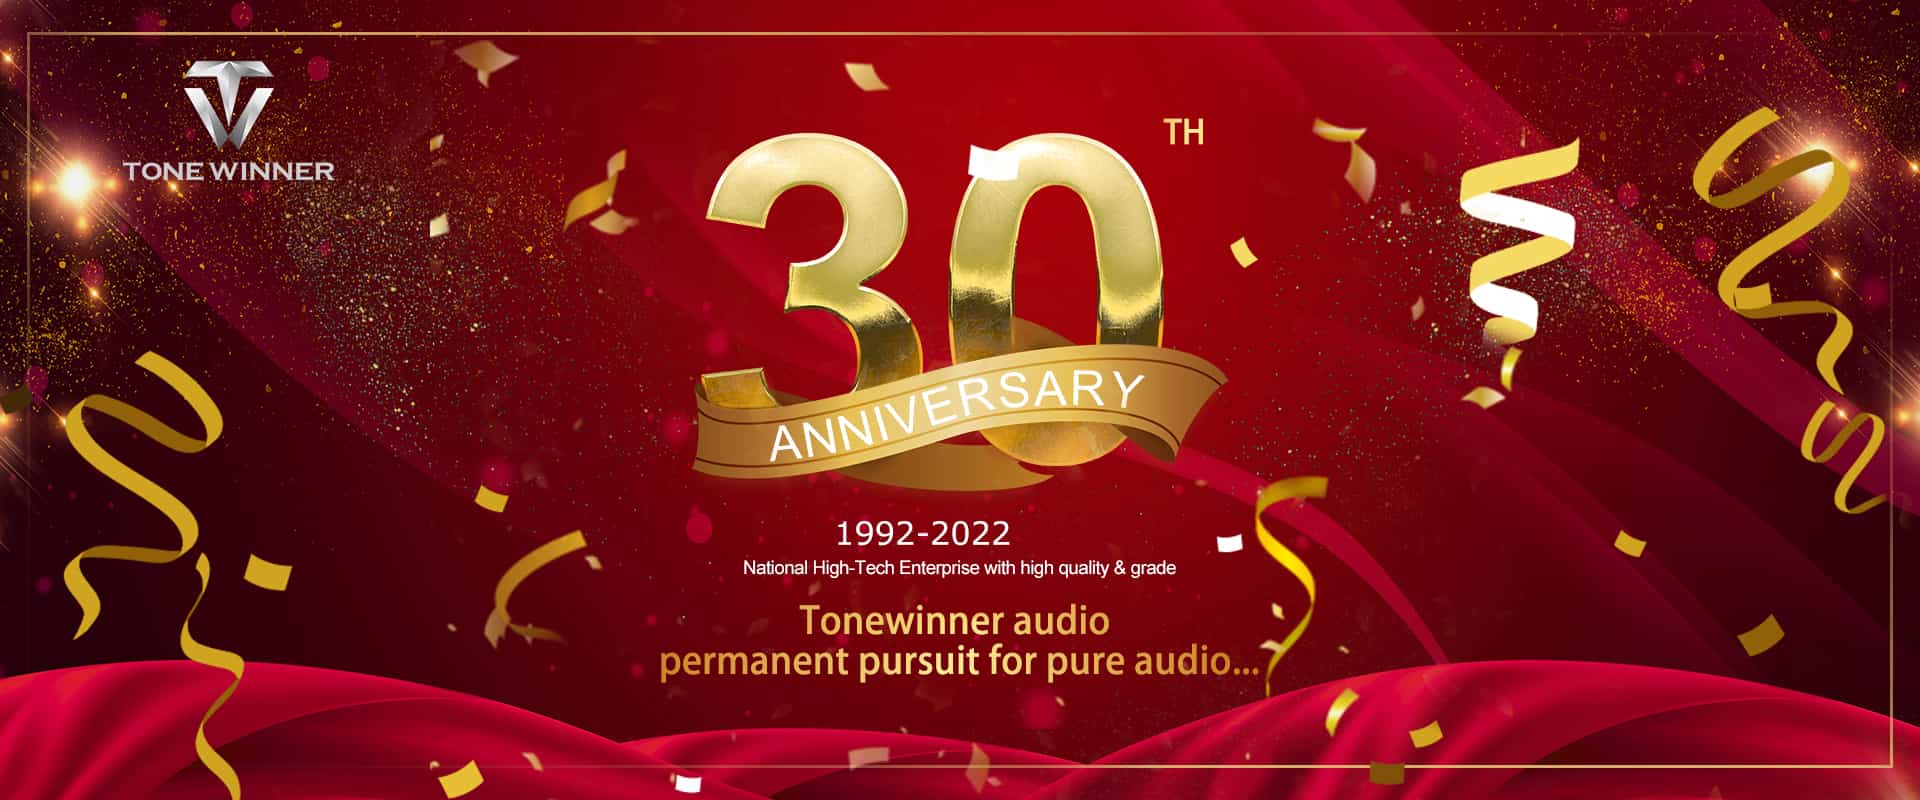 Célébration du 30e anniversaire de Tonewinner, félicitations !
